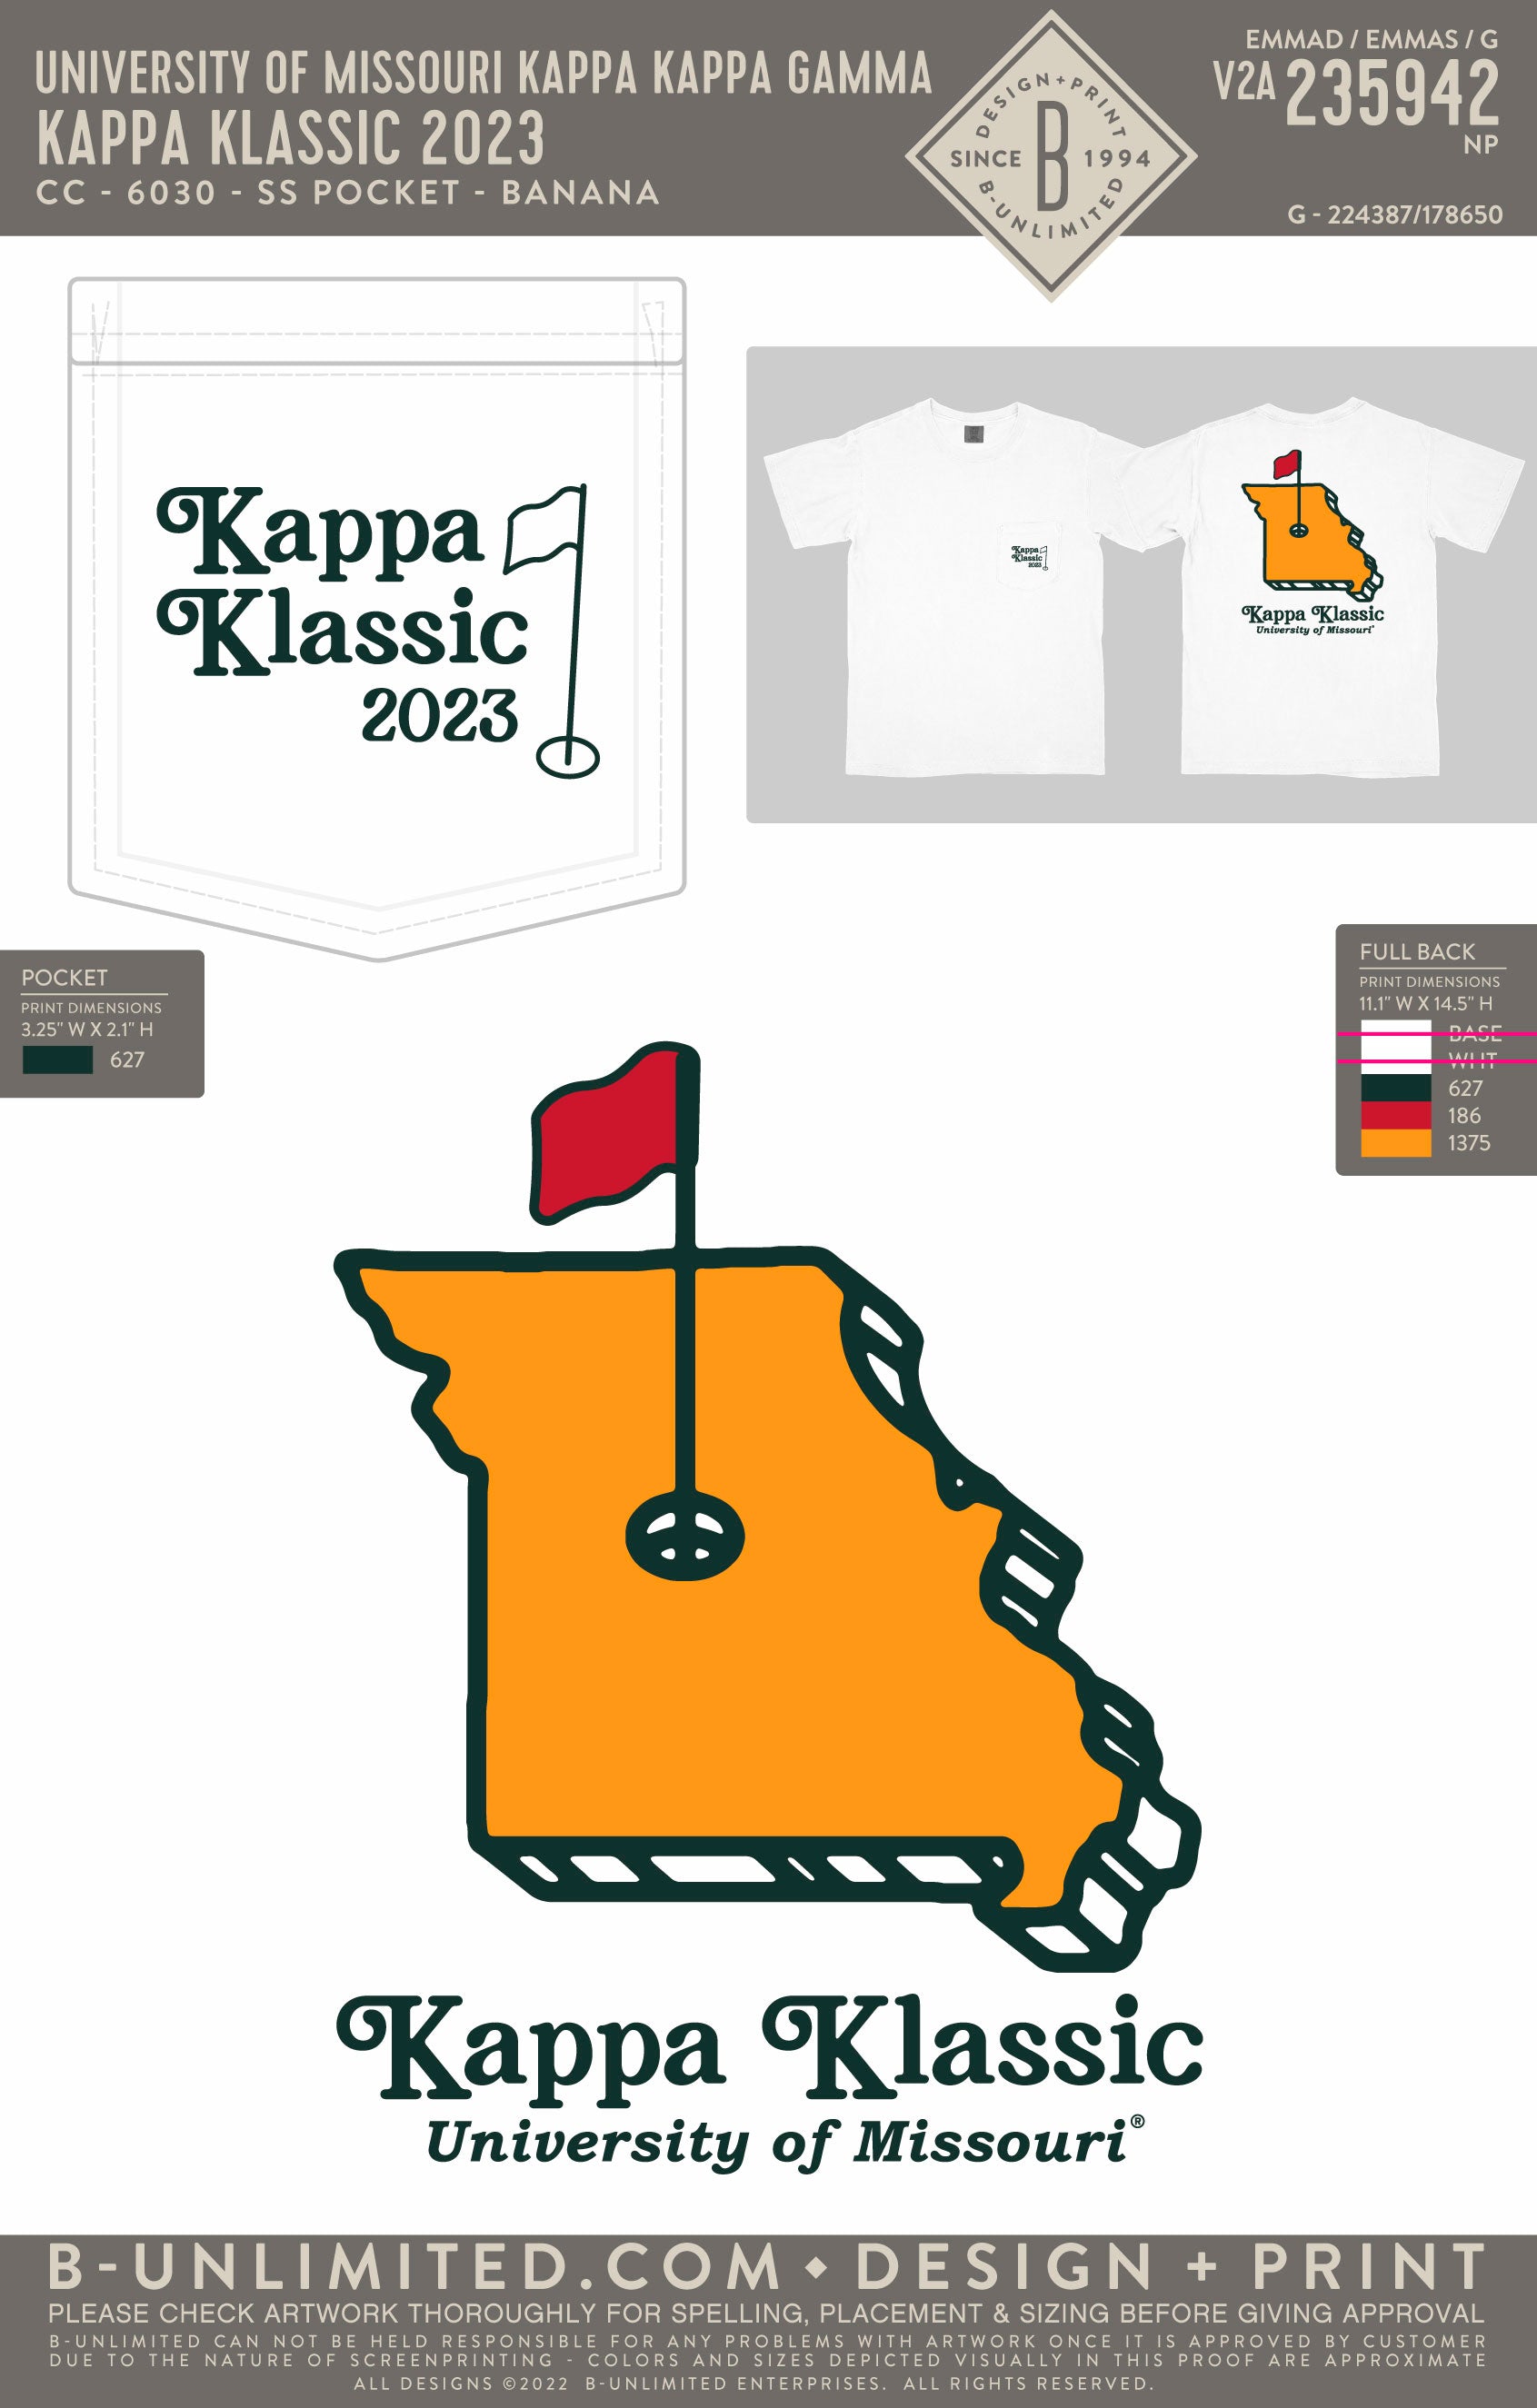 University of Missouri Kappa Kappa Gamma - Kappa Klassic 2023 - CC - 6030 - SS Pocket - White